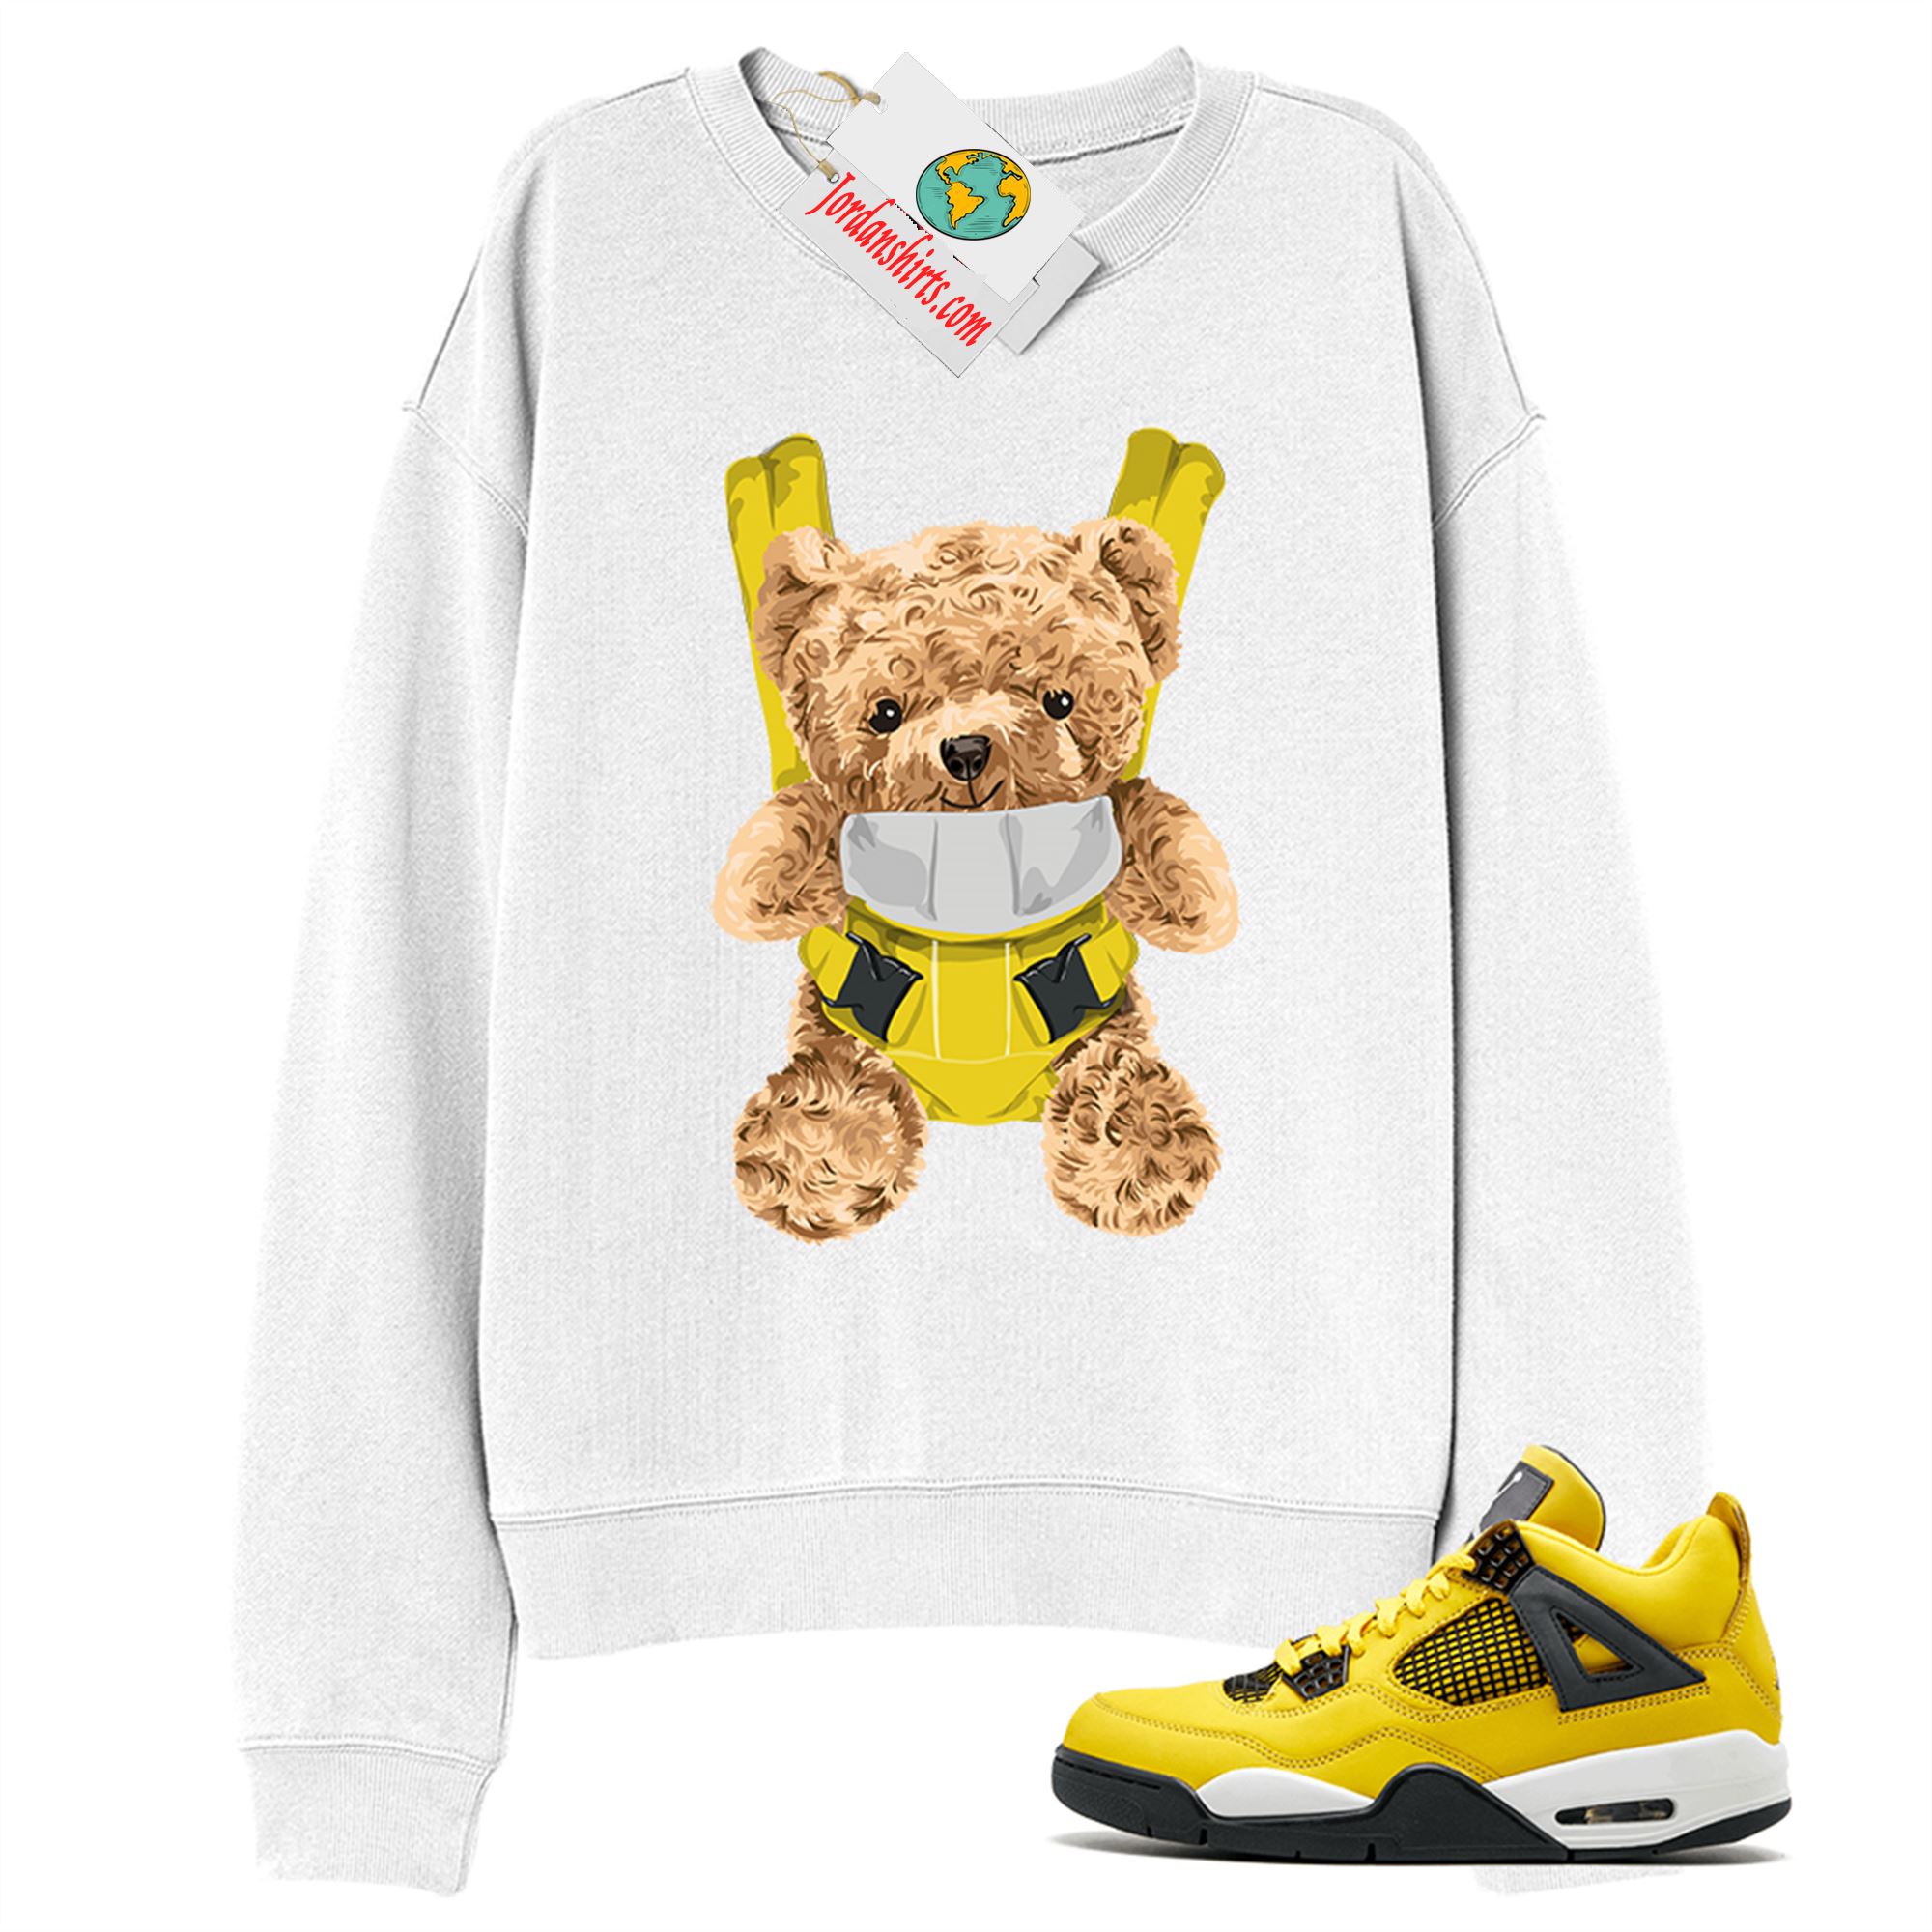 Jordan 4 Sweatshirt, Teddy Bear Bag White Sweatshirt Air Jordan 4 Tour Yellow Lightning 4s Size Up To 5xl